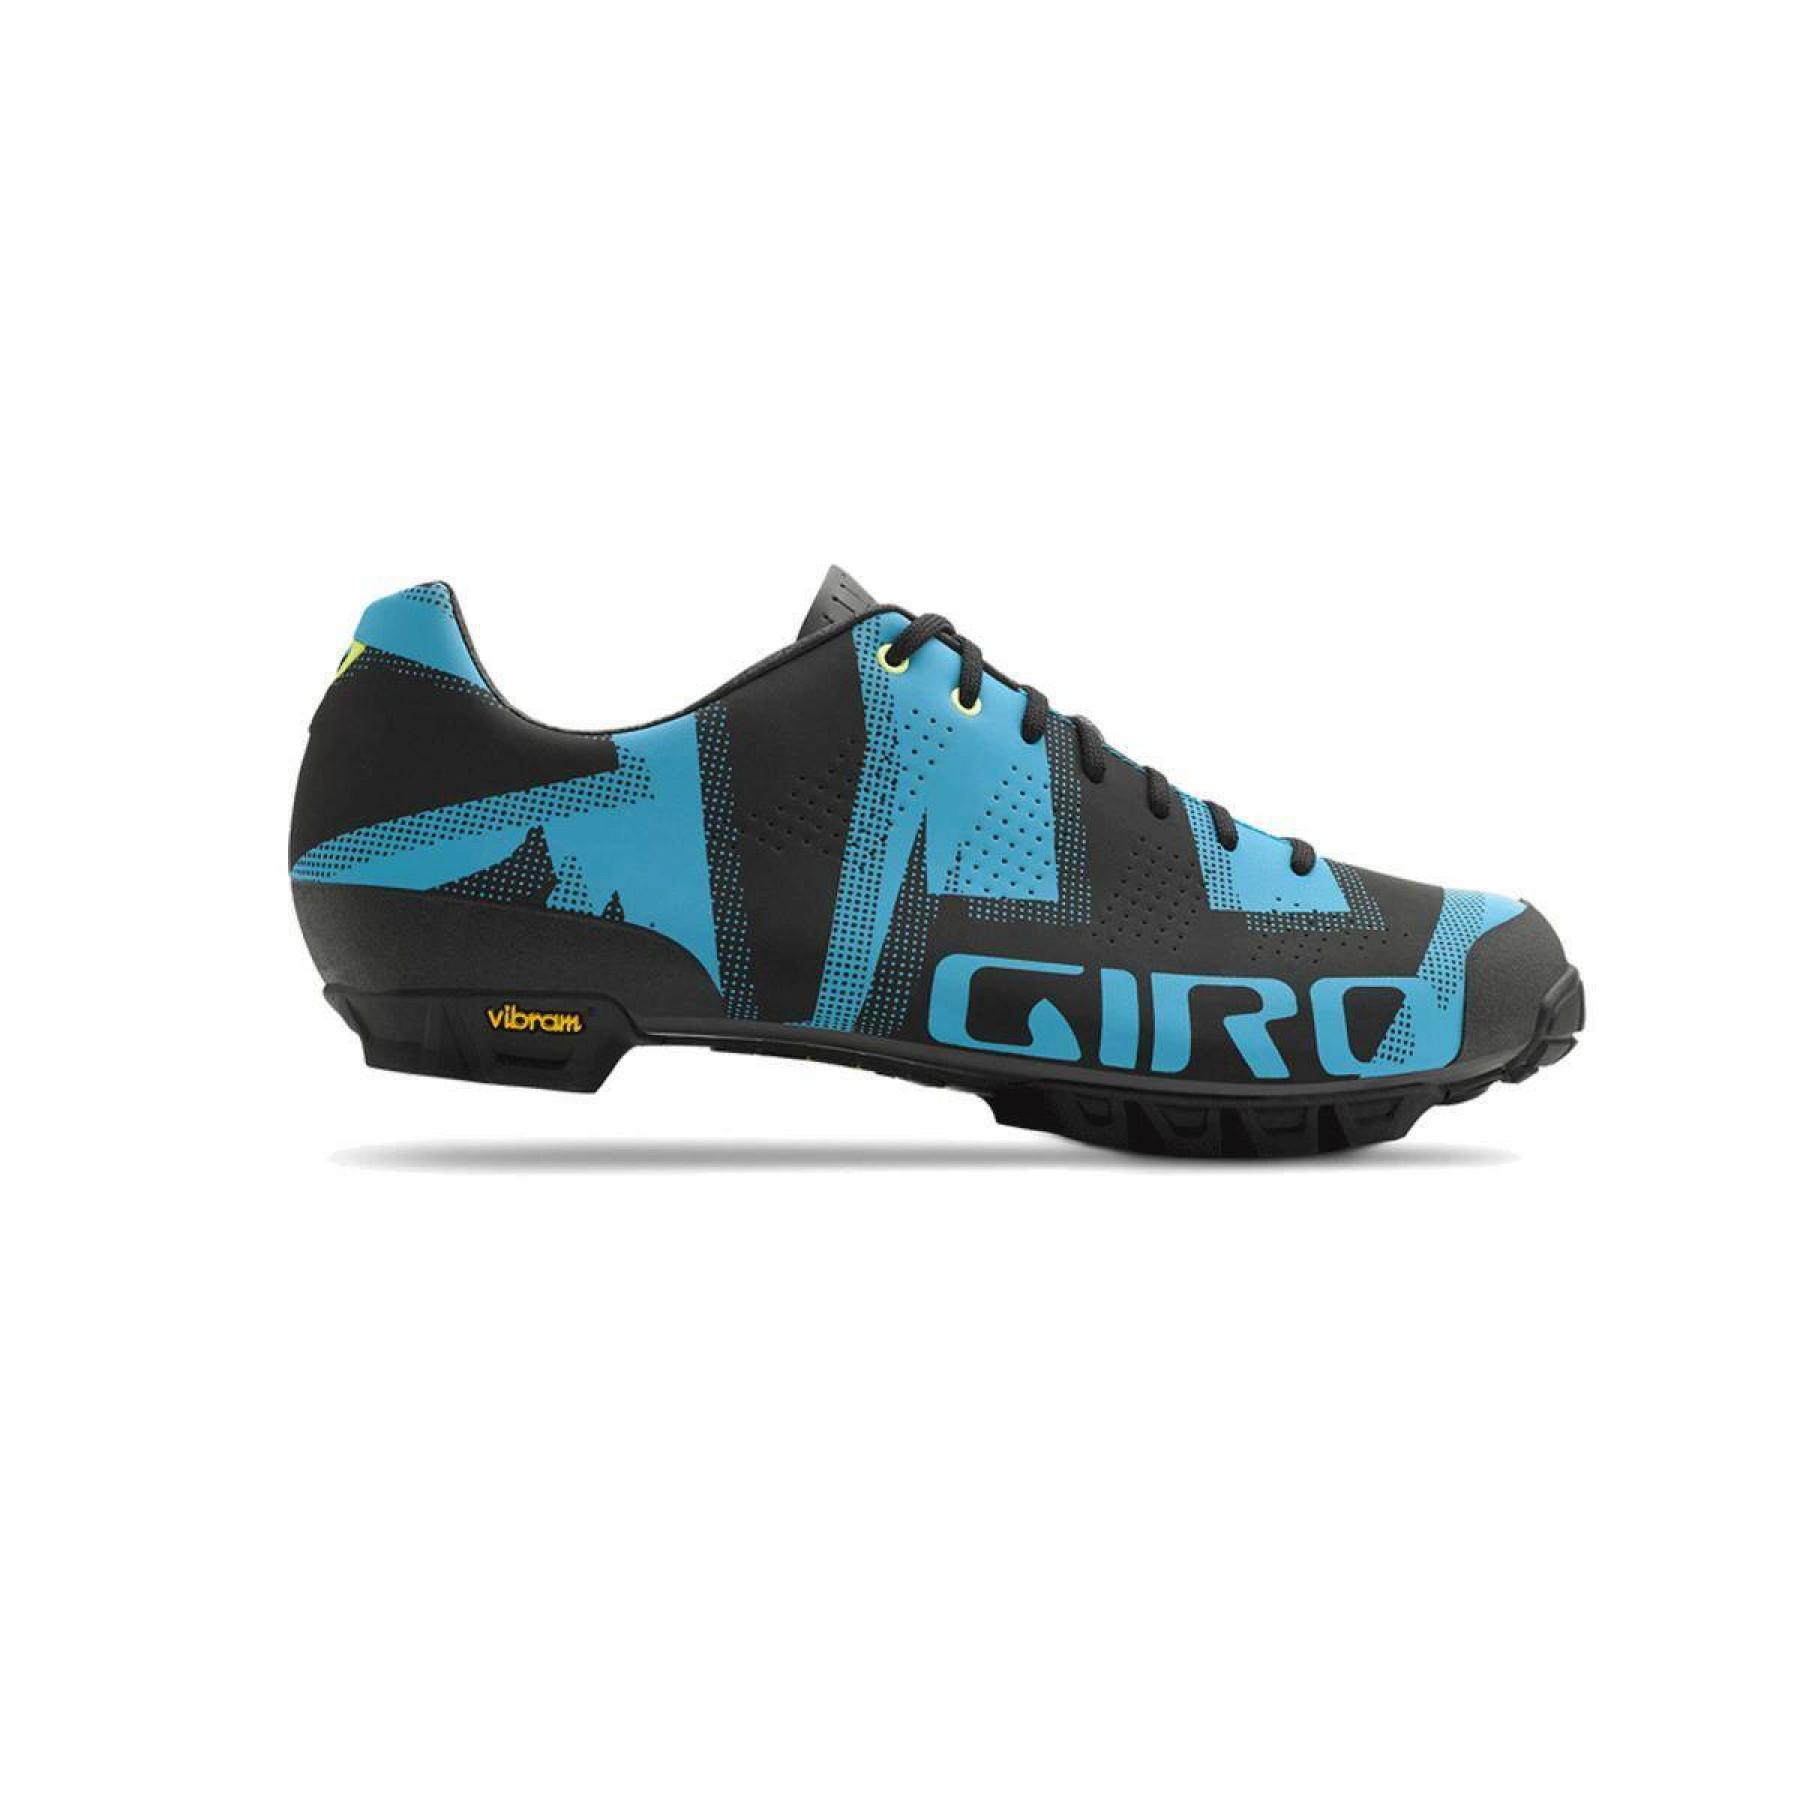 Schuhe Giro Empire VR90